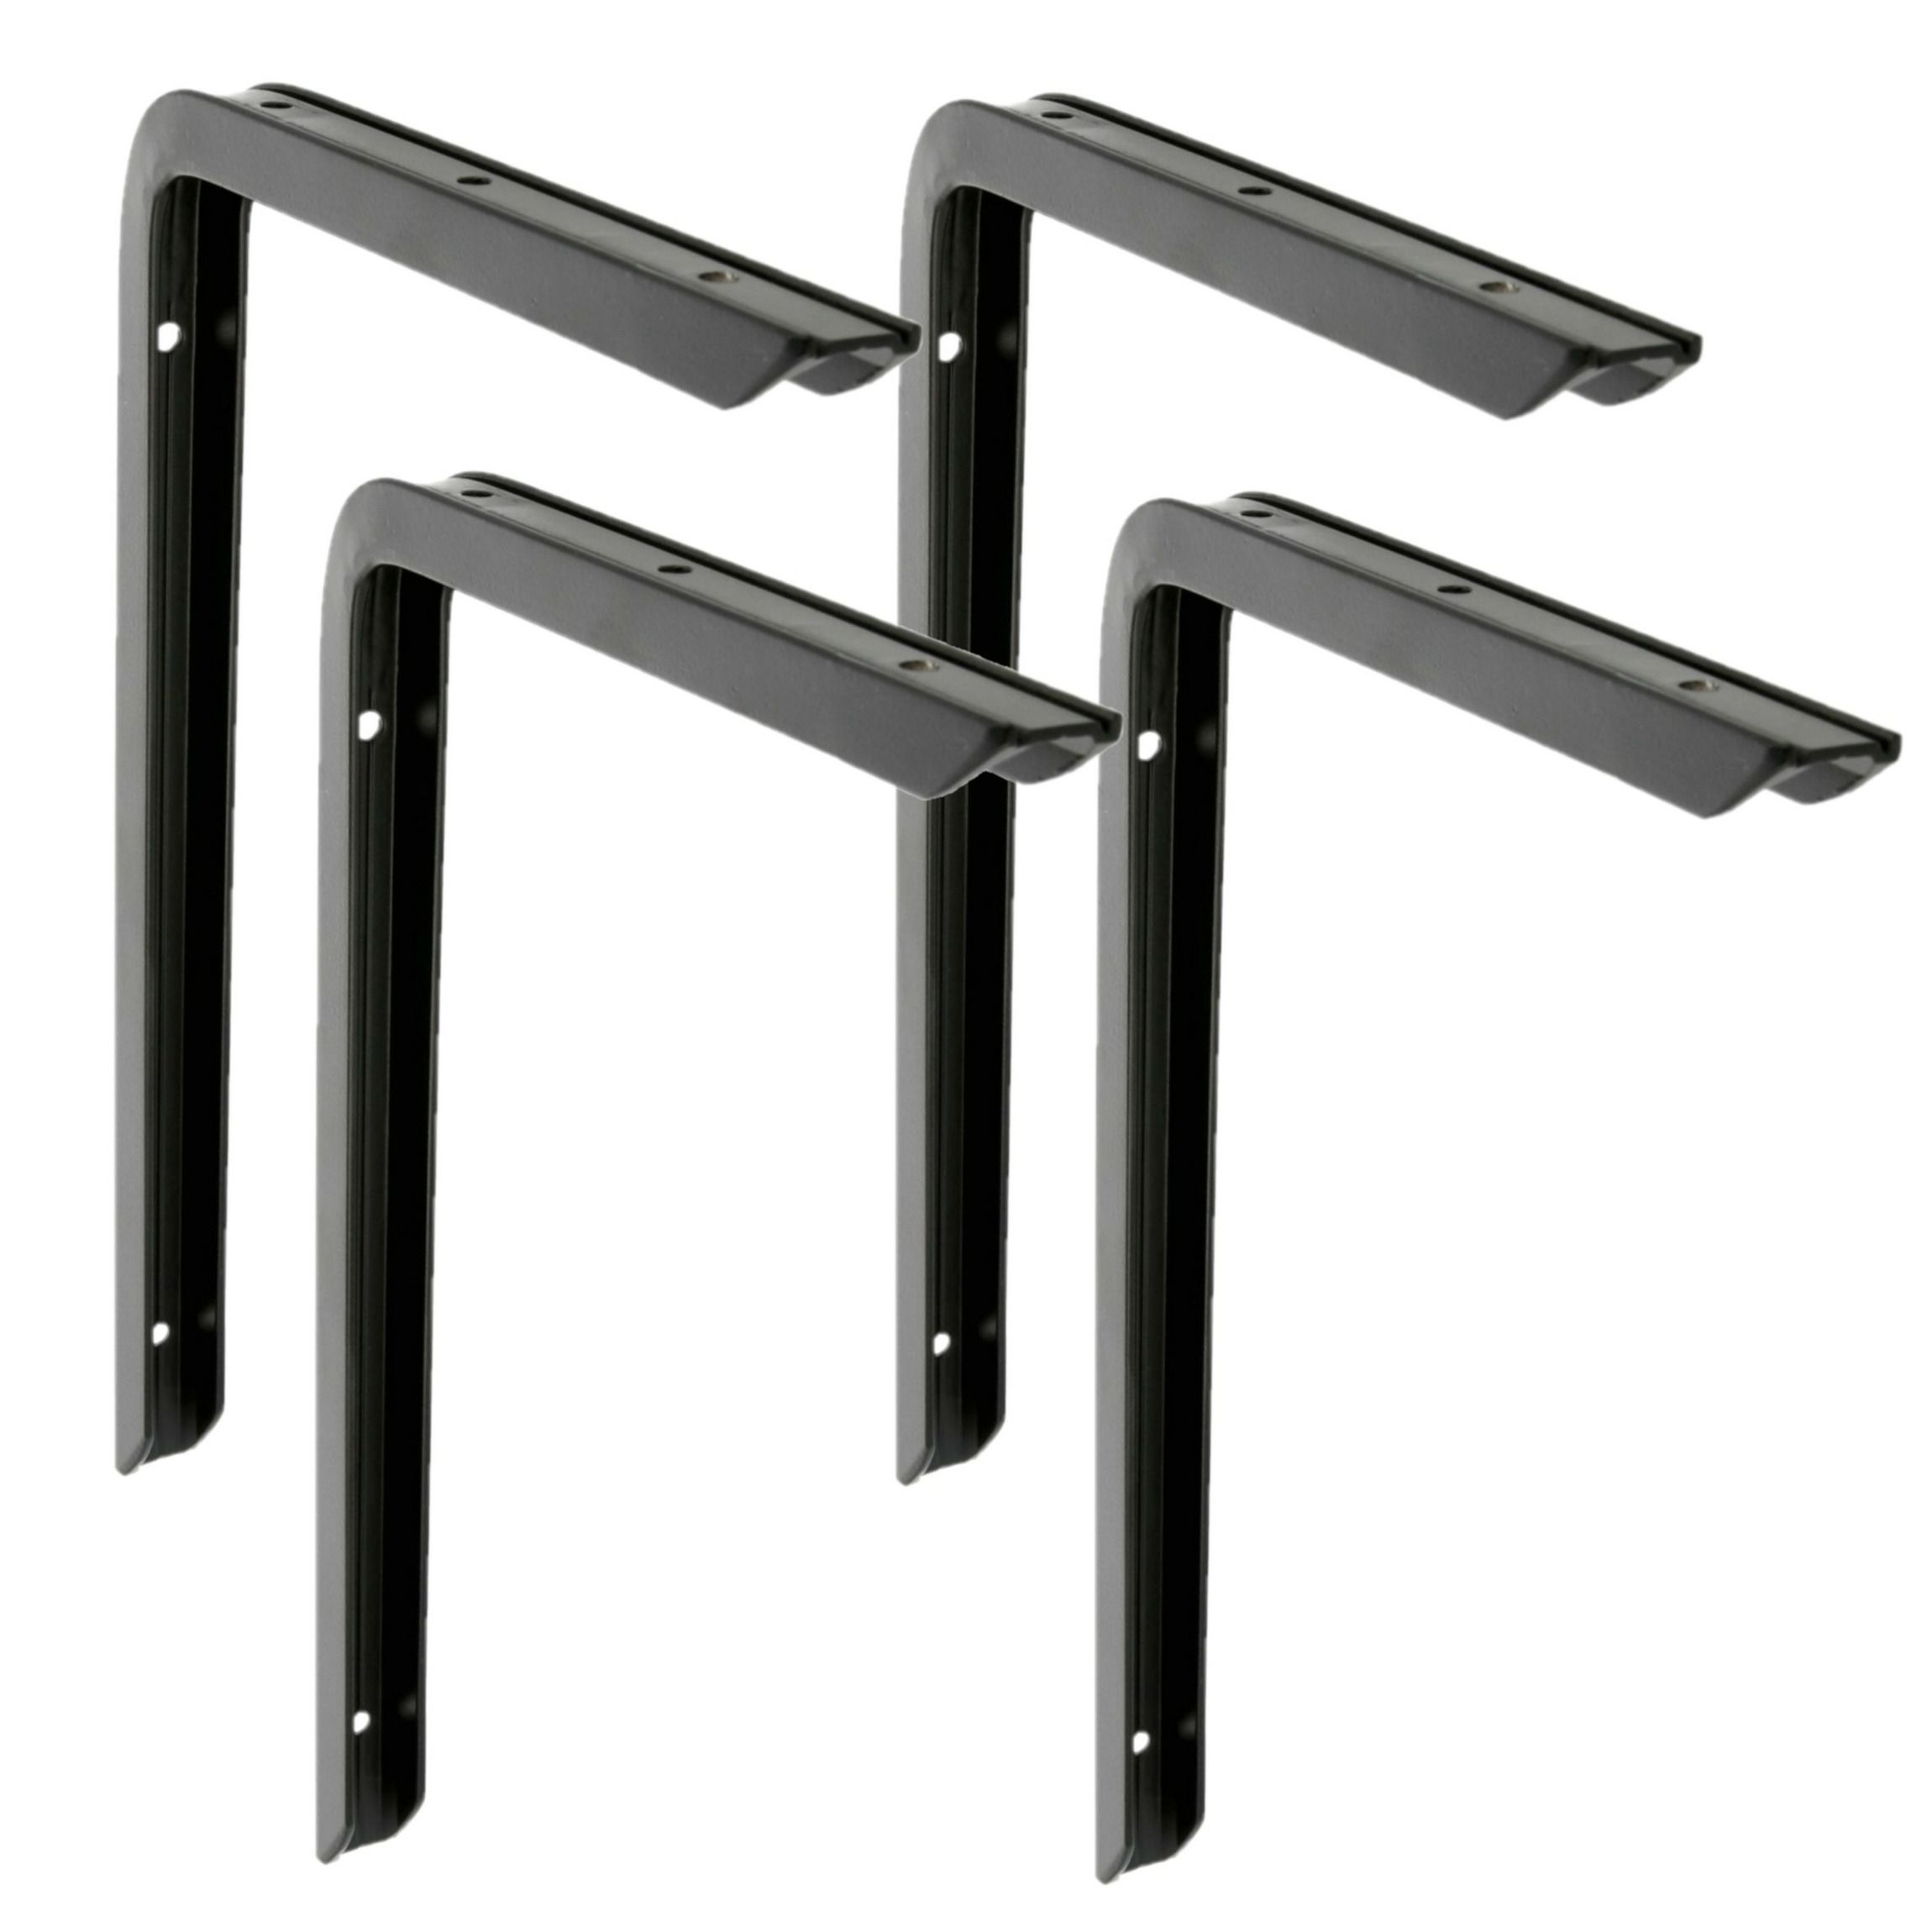 AMIG Plankdrager-planksteun 4x aluminium gelakt zwart H350 x B200 mm max gewicht 45 kg